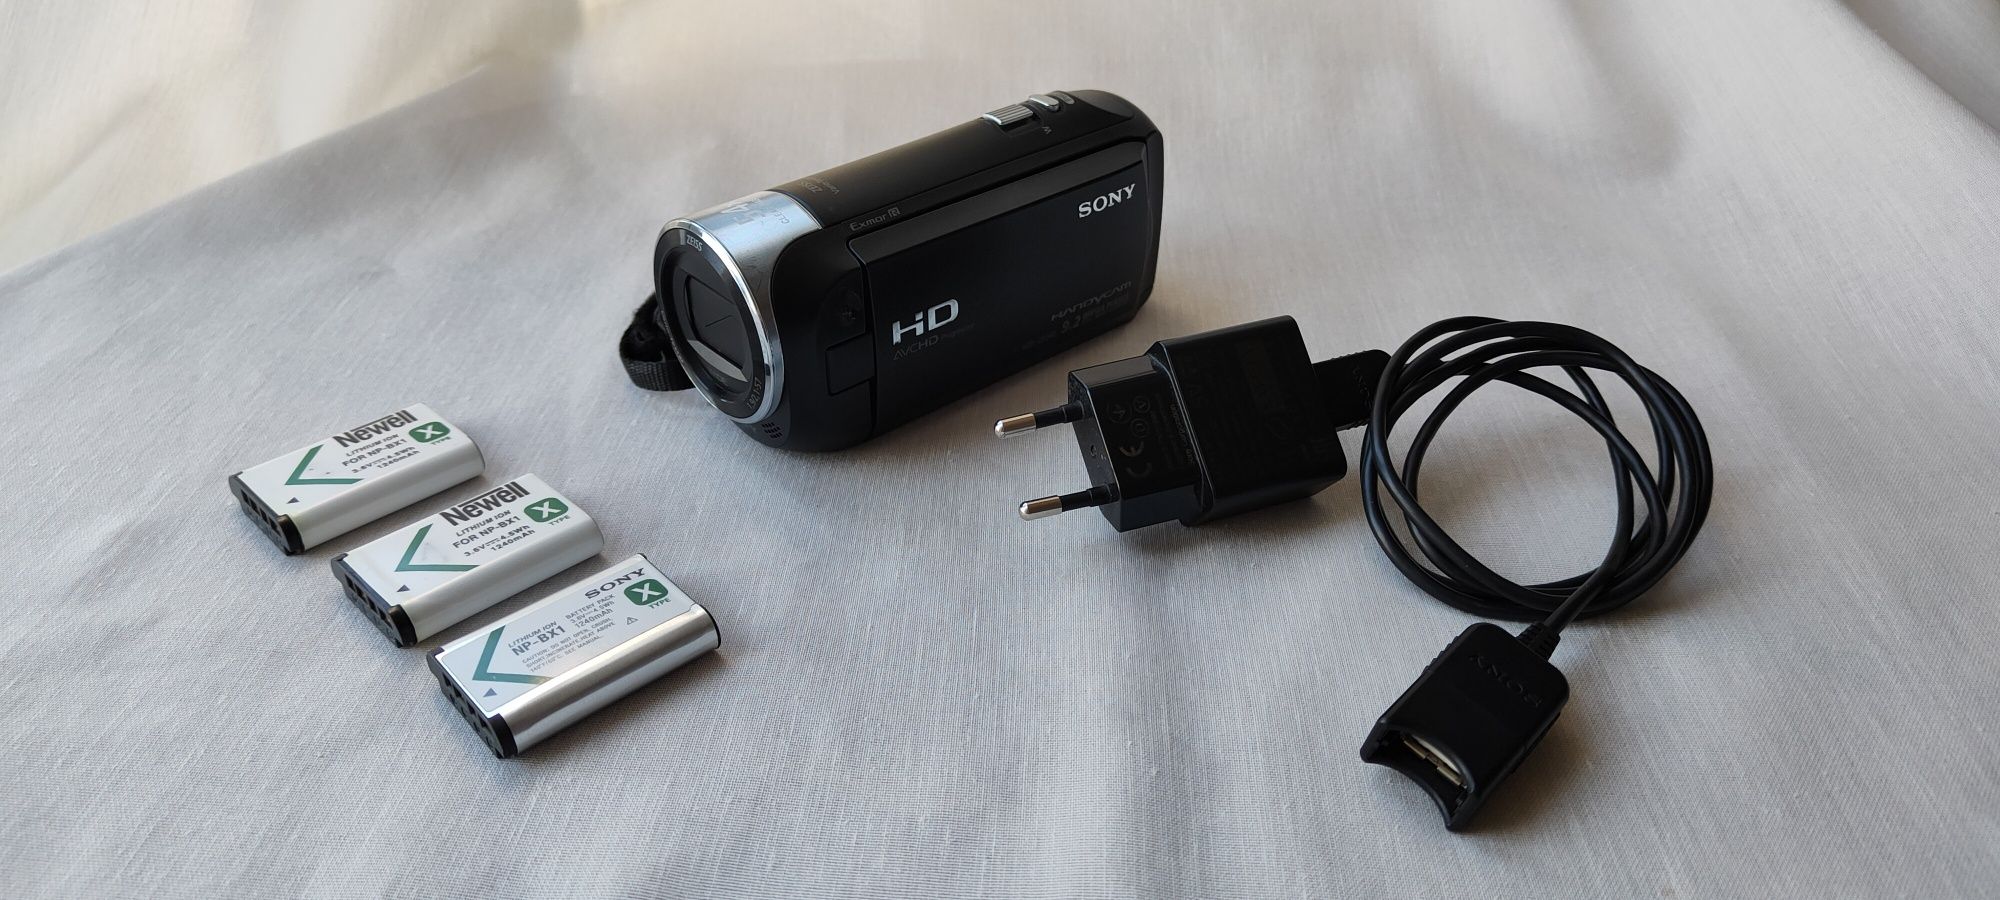 Kamera cyfrowa Sony HDR-CX240E czarna + 2 baterie z ładowarką